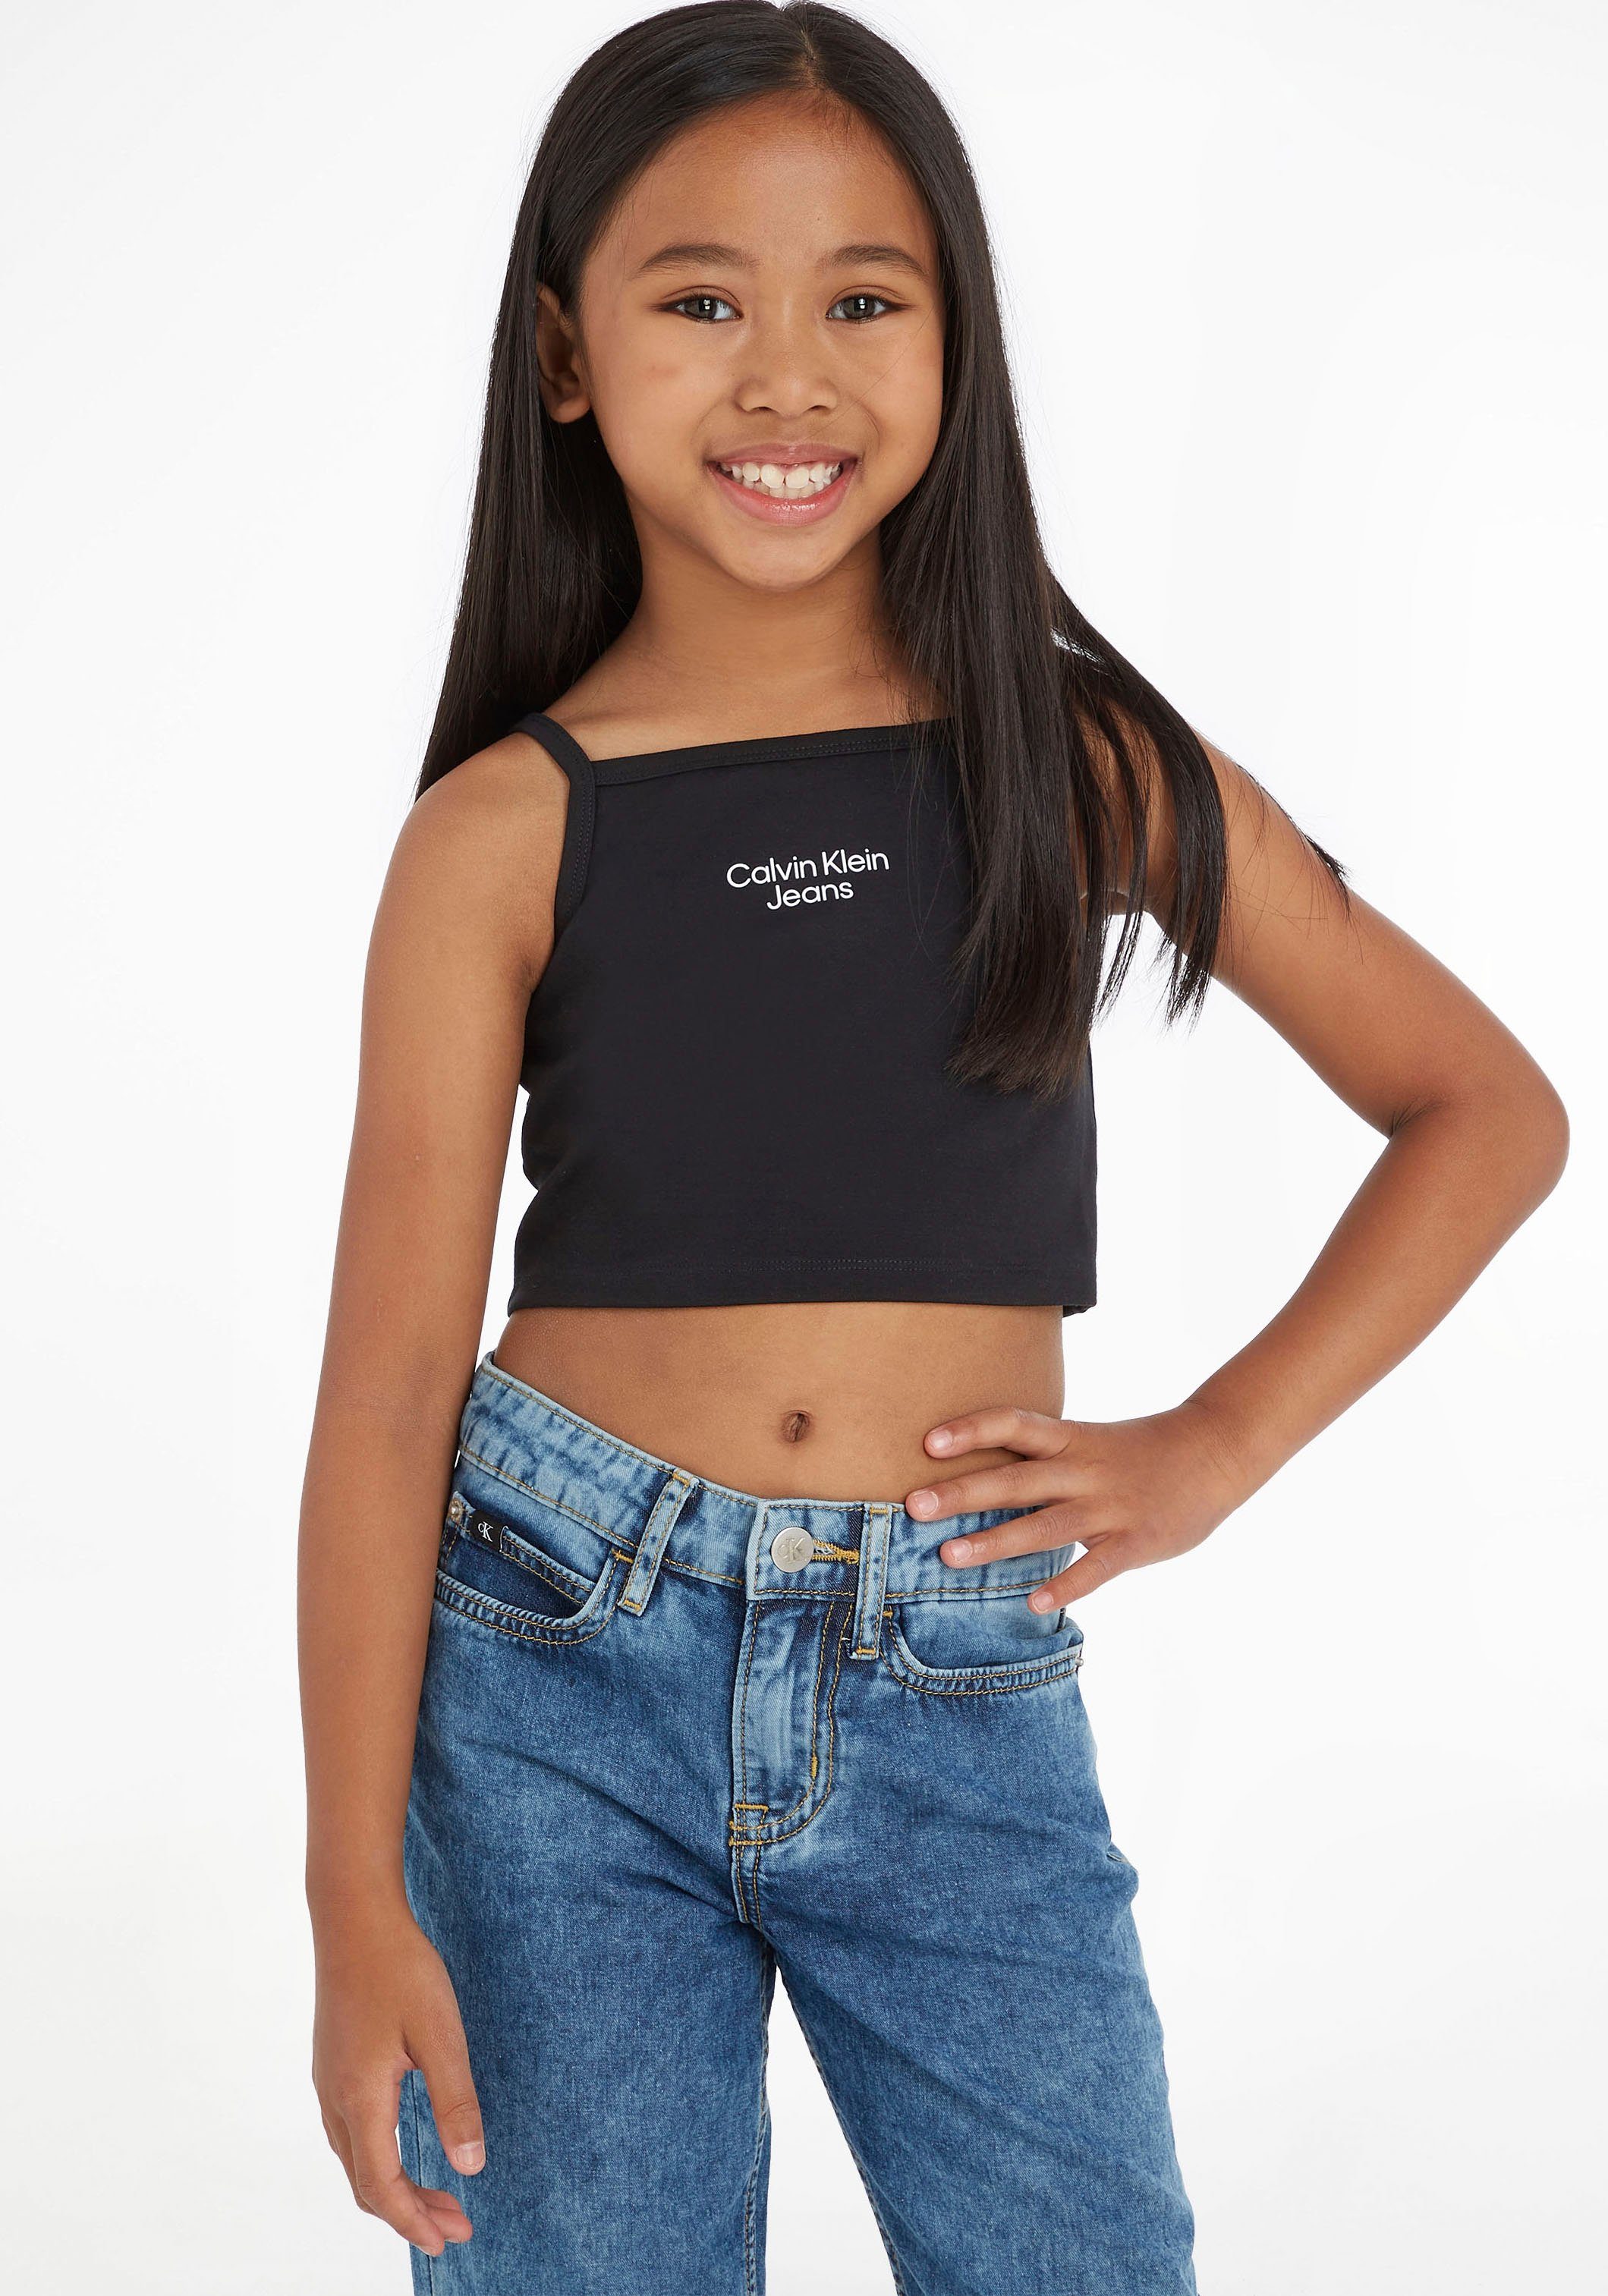 Calvin Klein Jeans T-Shirt Kinder Kids Junior MiniMe,mit schnalen Trägern